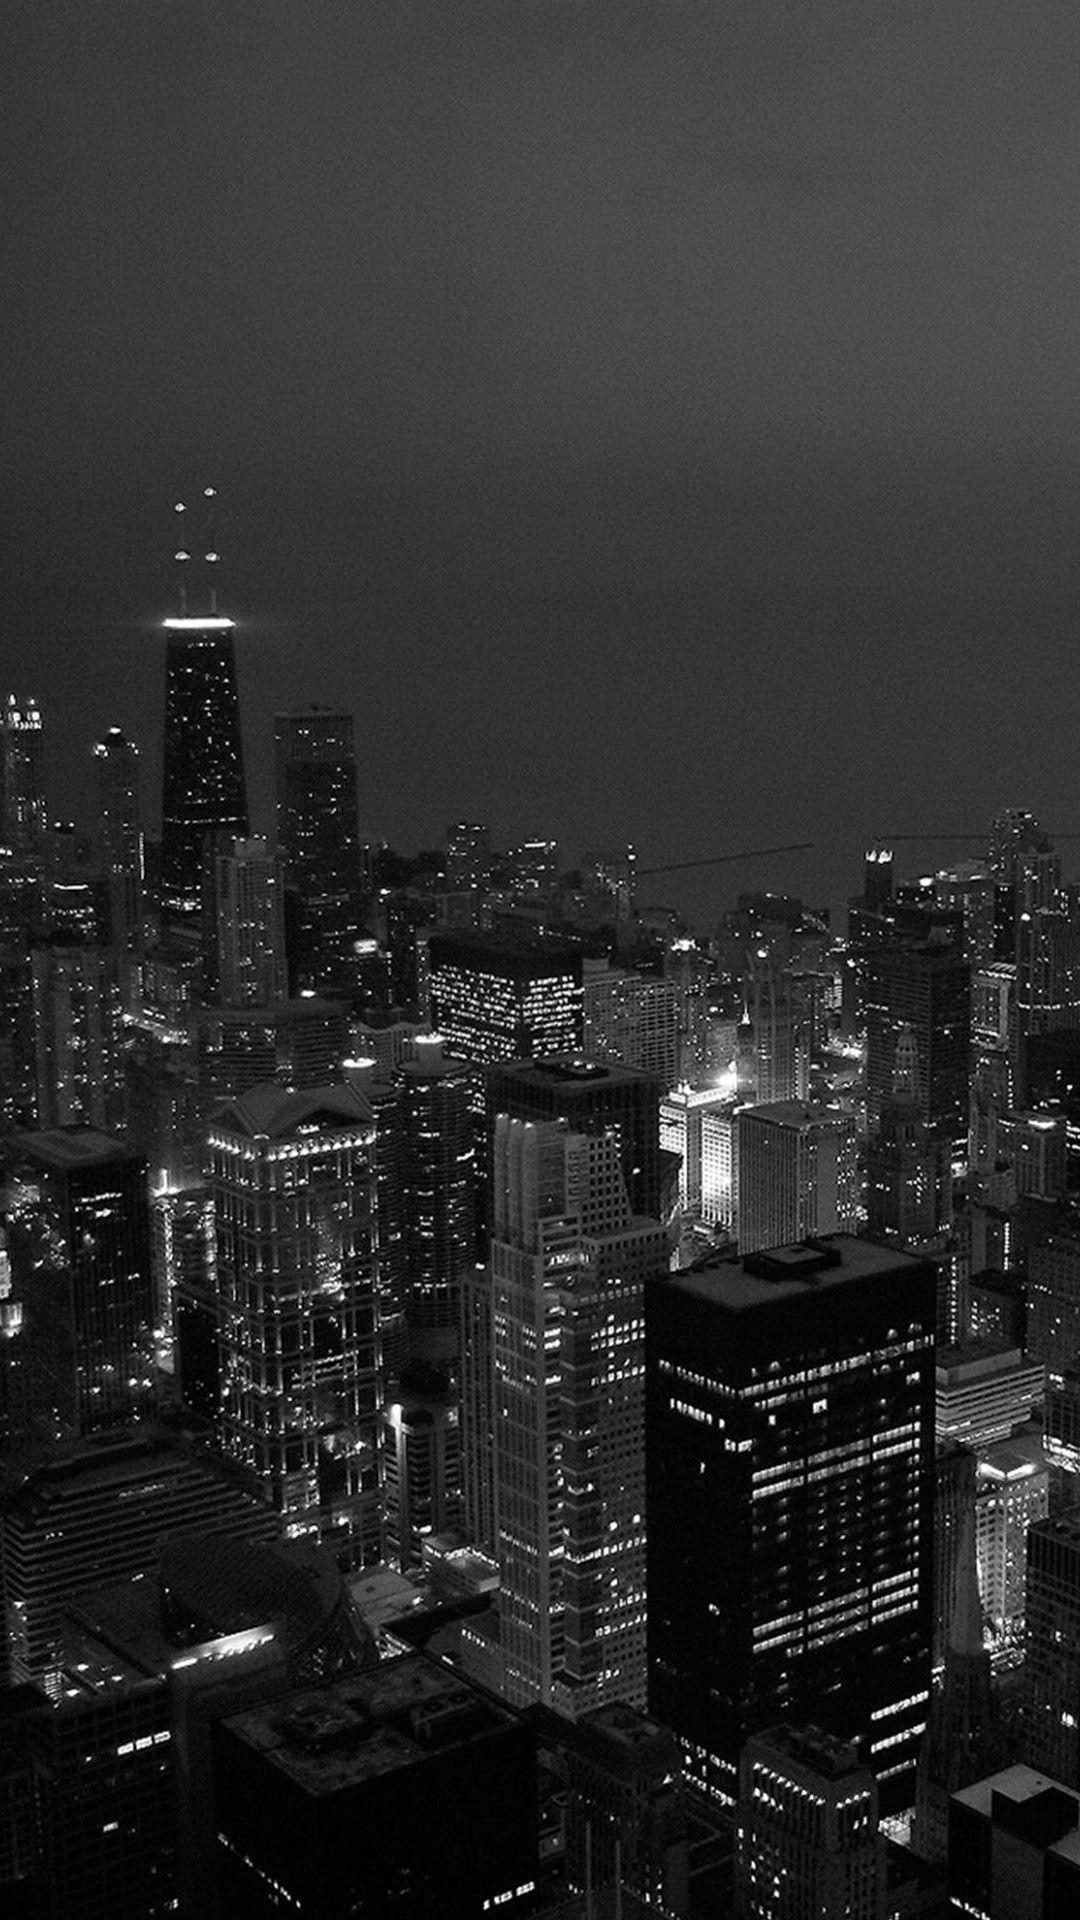 Hình ảnh đẹp thành phố đen trắng: Đến với bộ sưu tập hình ảnh đẹp thành phố đen trắng, bạn sẽ được trải nghiệm không khí những con phố sầm uất, ngắm nhìn nét đẹp tinh tế của kiến trúc và cảm nhận sự cuồng nhiệt của thành phố vào ban đêm.